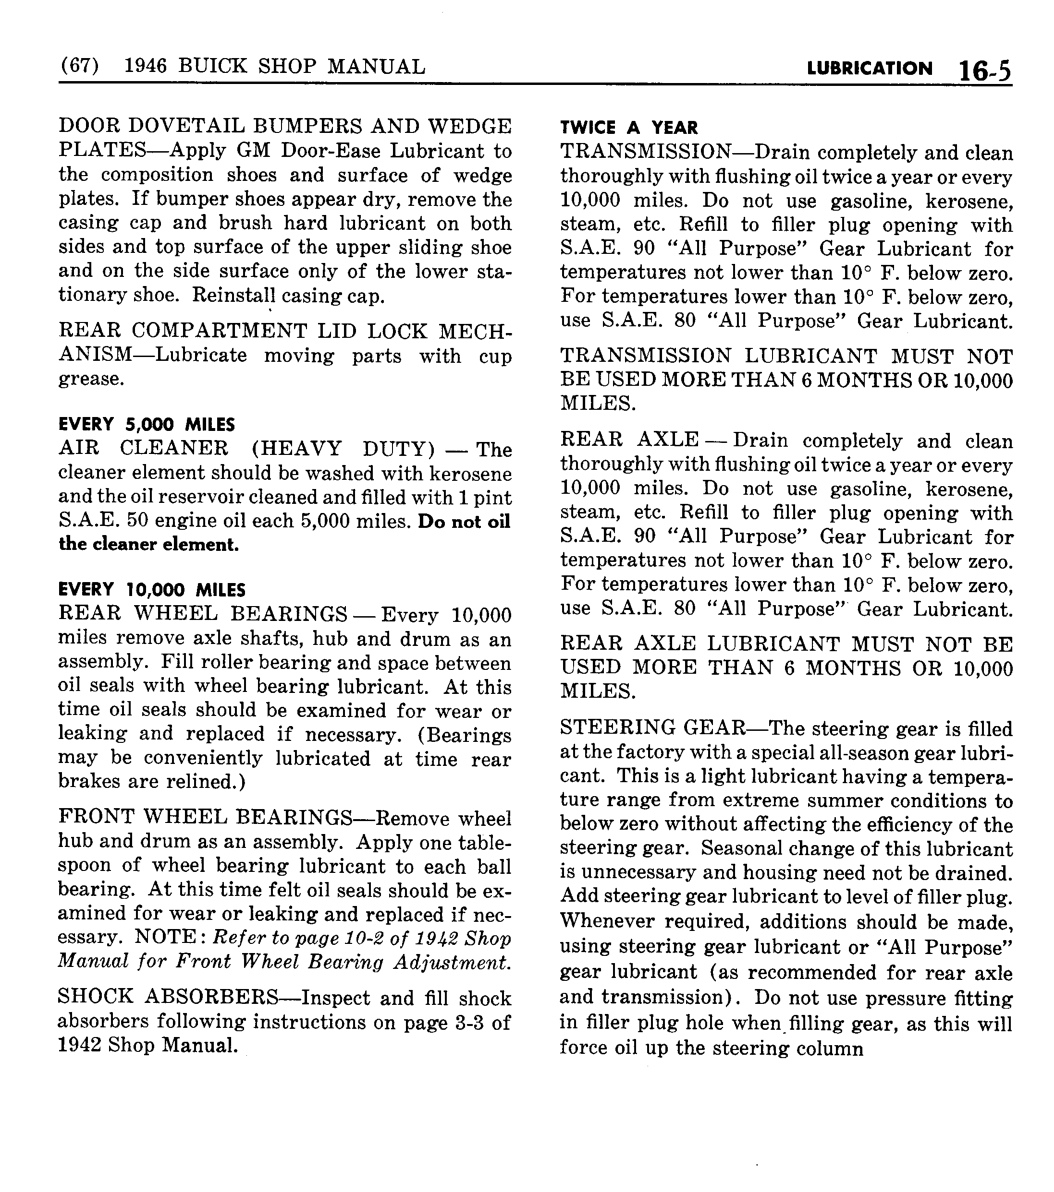 n_15 1946 Buick Shop Manual - Lubrication-005-005.jpg